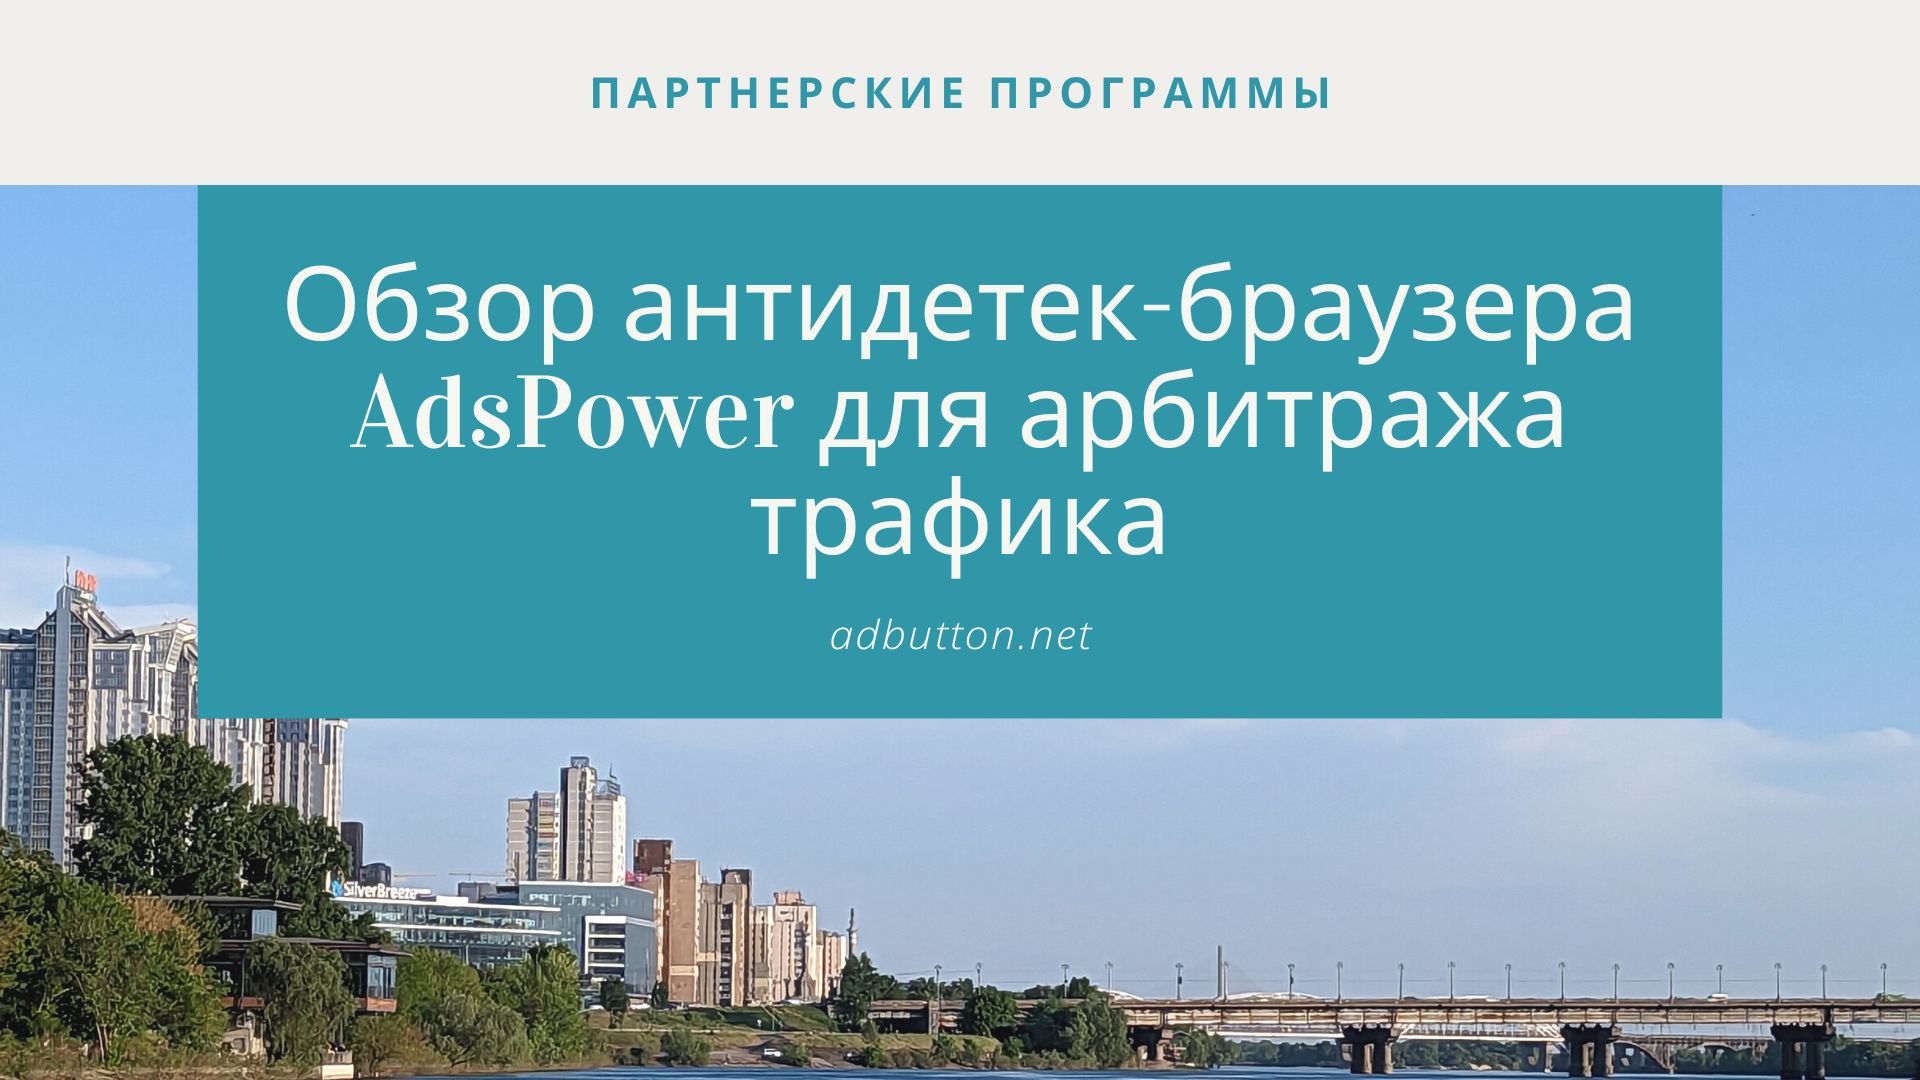 AdsPower: мощный антидетект-браузер для арбитражников и мультиаккаунтинга